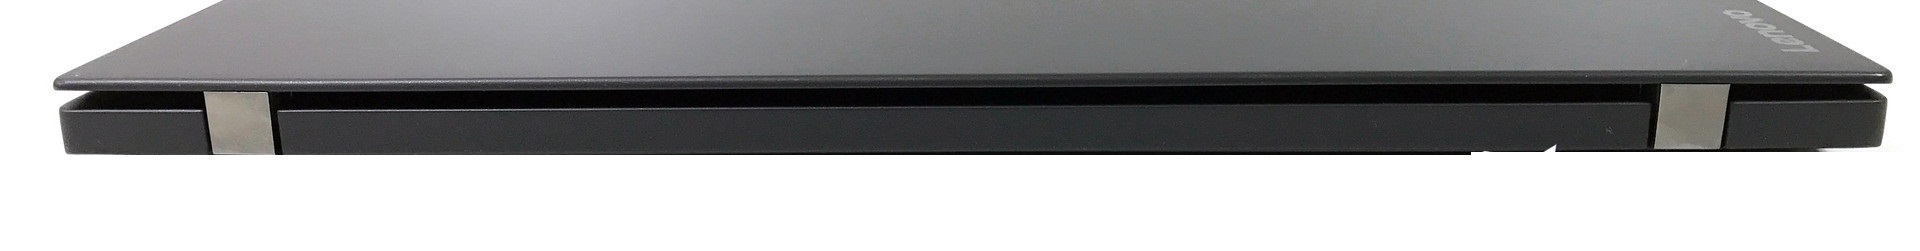 Đánh giá Laptop Lenovo ThinkPad T470s: Xách tay, hiệu năng tốt, Chuyên trang tư vấn Laptop